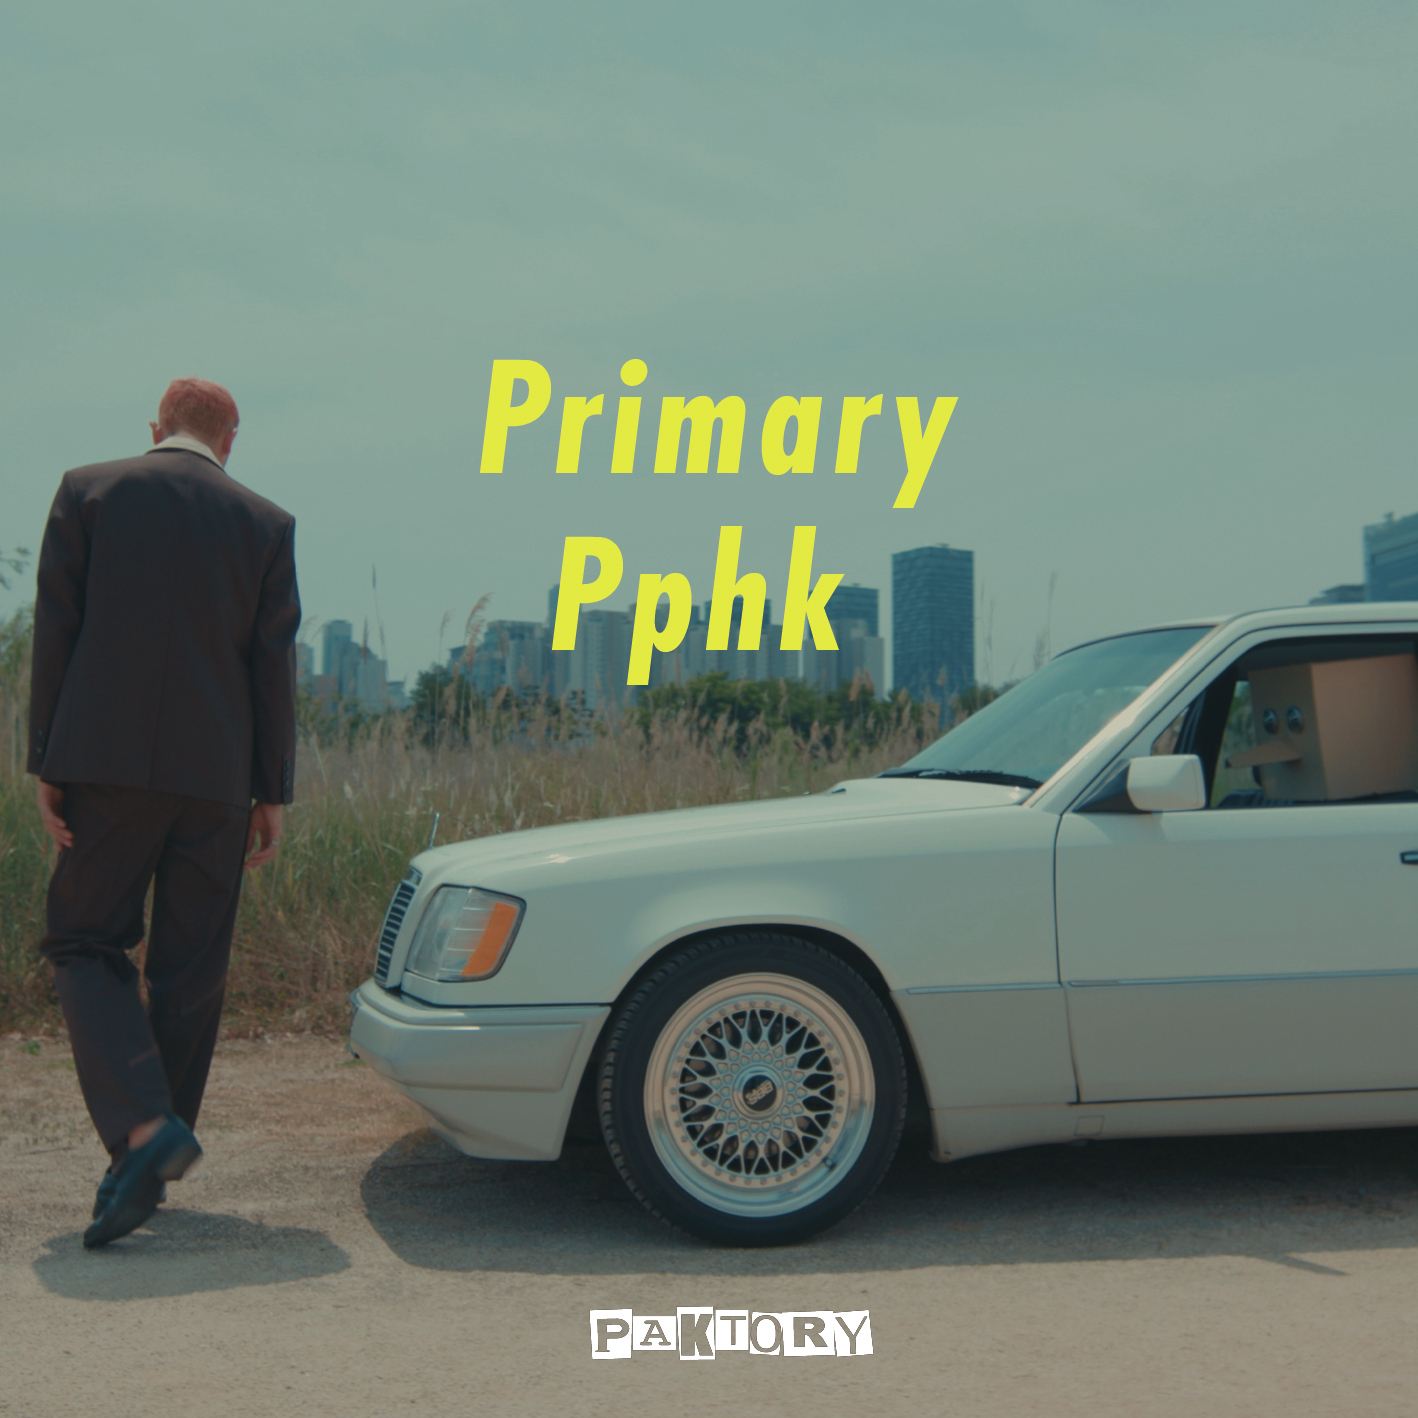 [情報] Primary and Pphk Pt.1